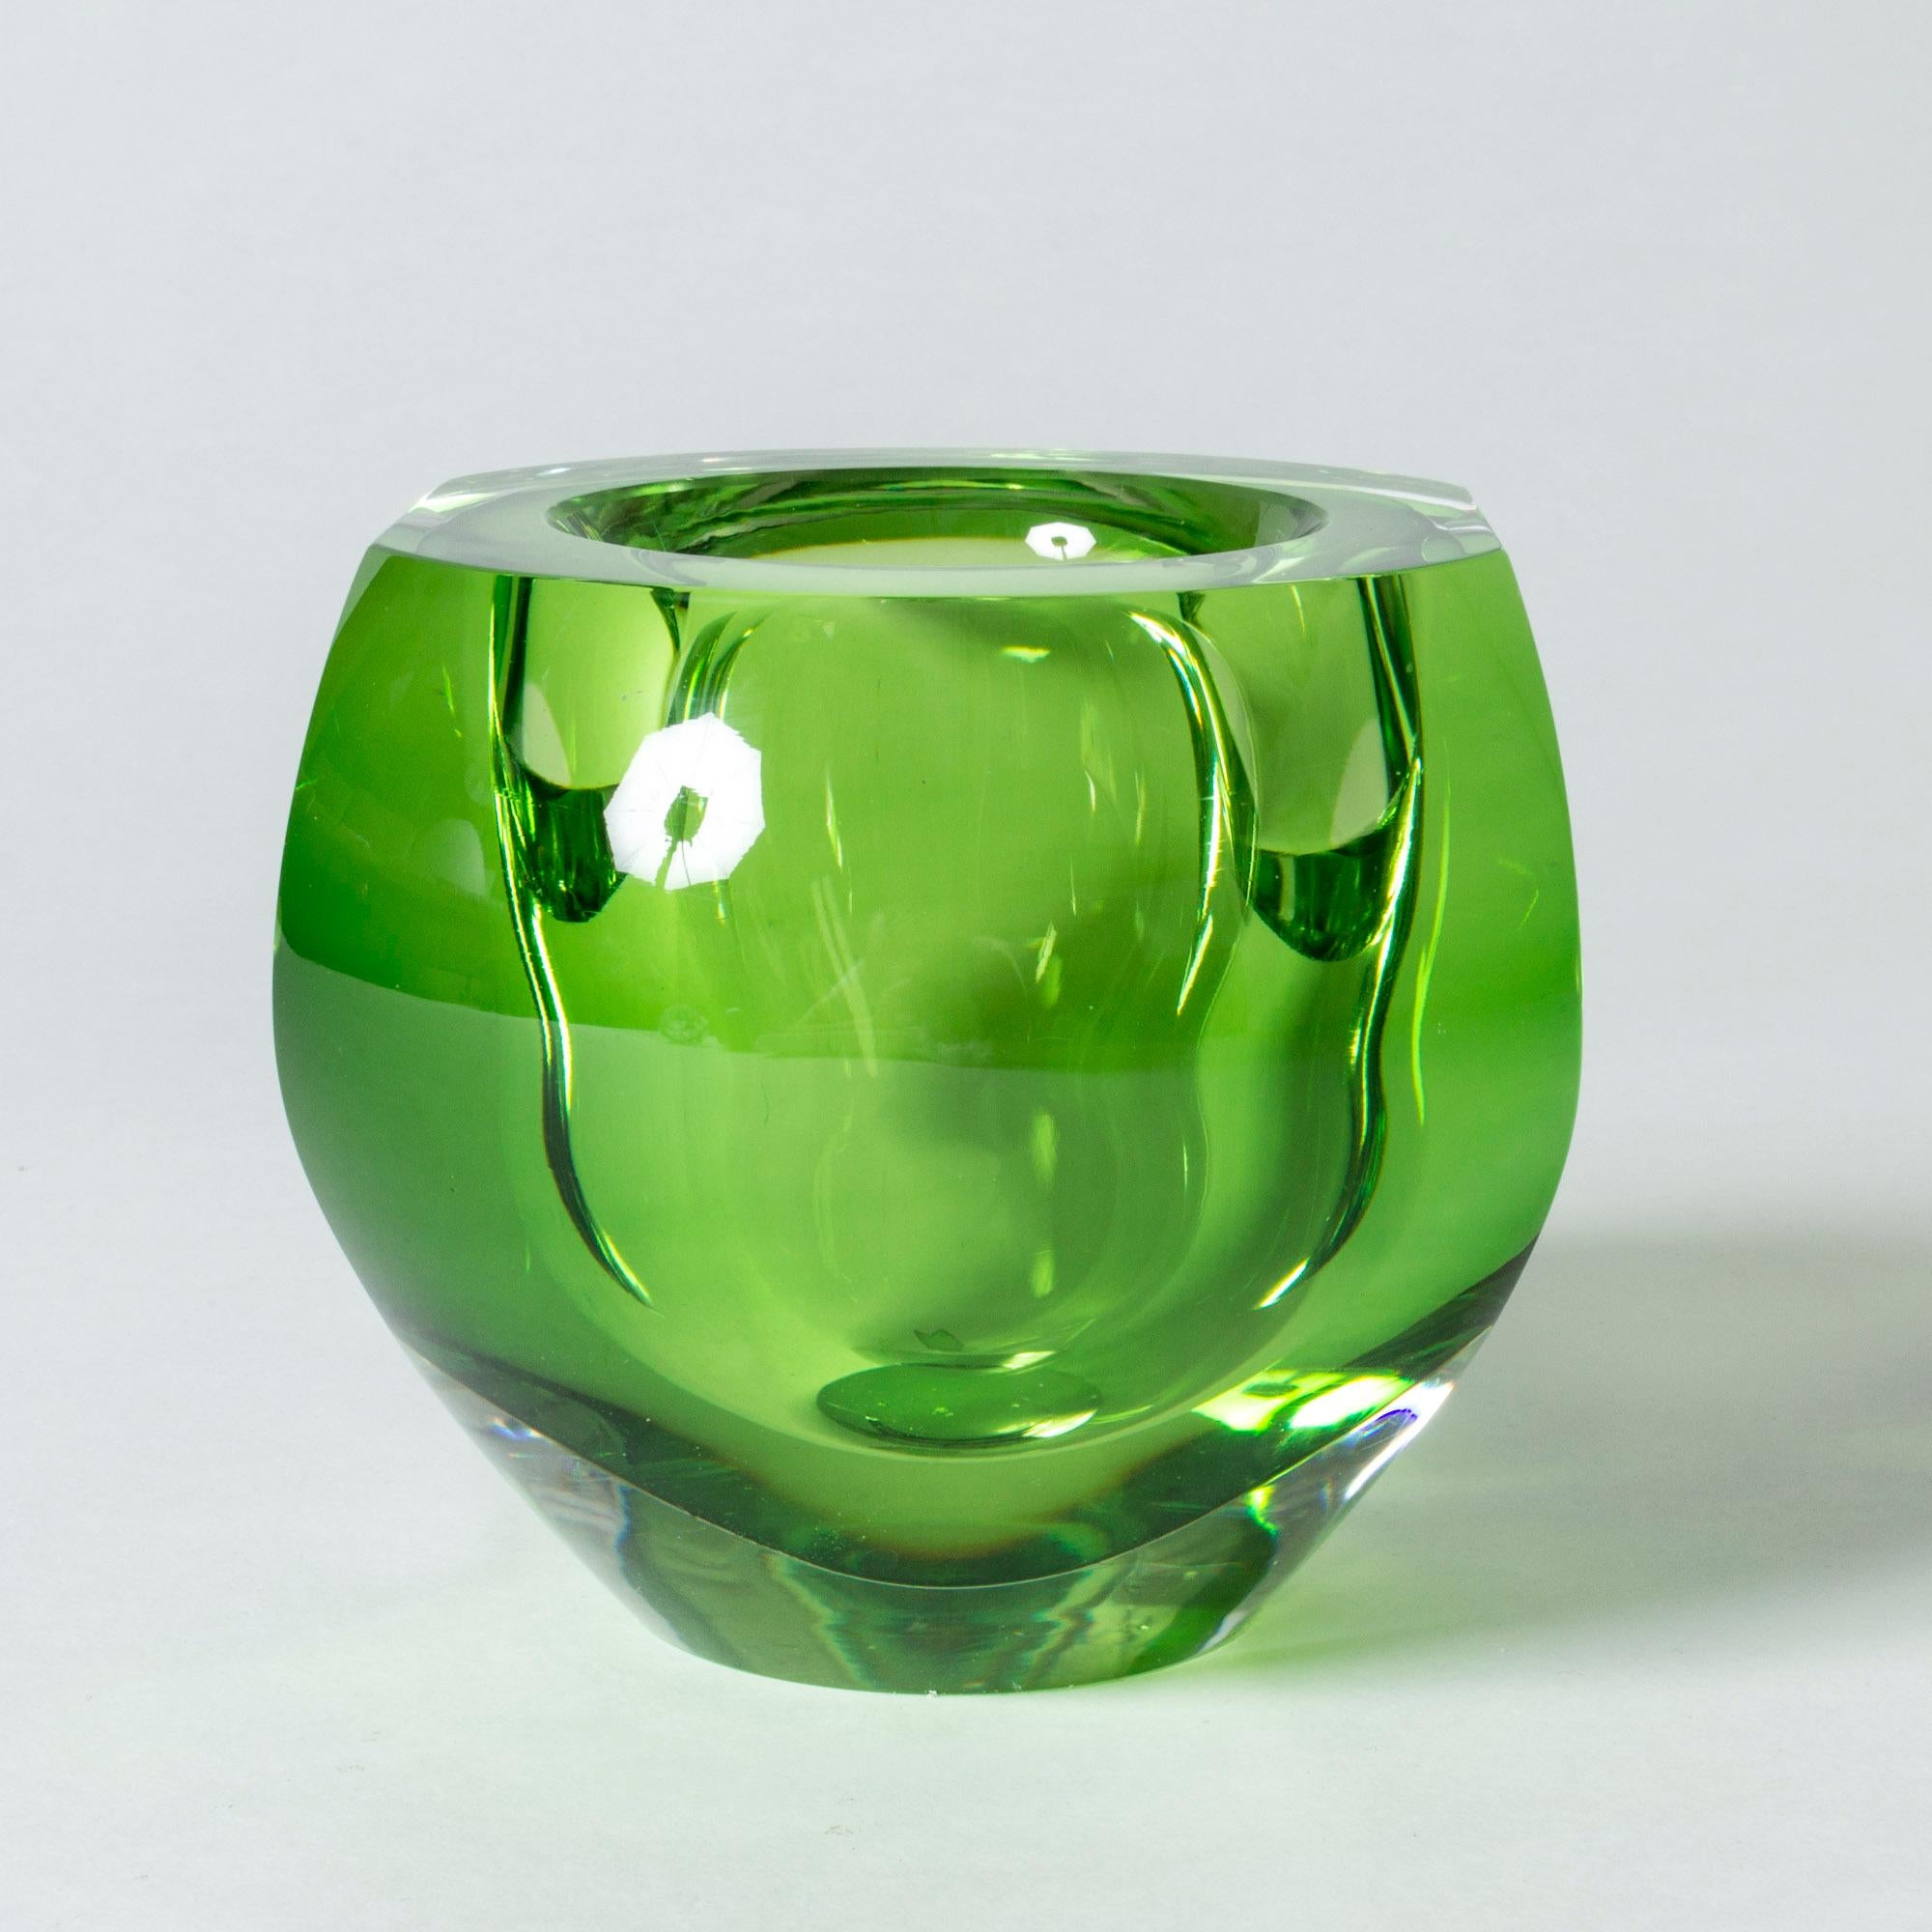 Kristallglasschale von Mona Morales-Schildt, in schwerer Qualität und einer auffälligen, giftgrünen Farbe. Dramatisches Design mit einem Lichtspiel im dicken Glas.